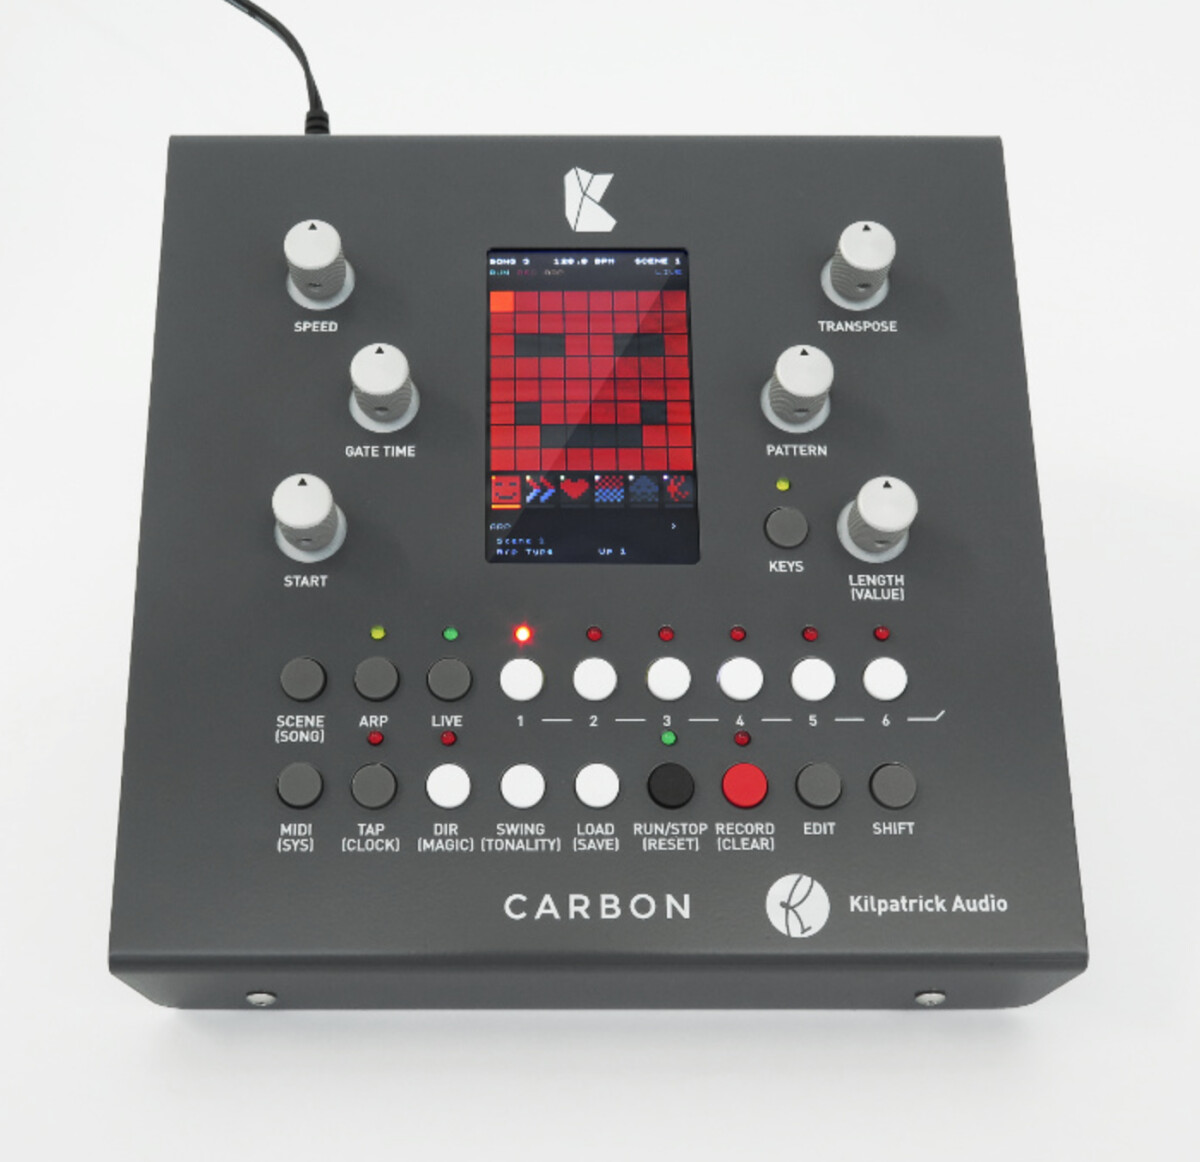 Kilpatrick Audio dévoile le séquenceur Carbon